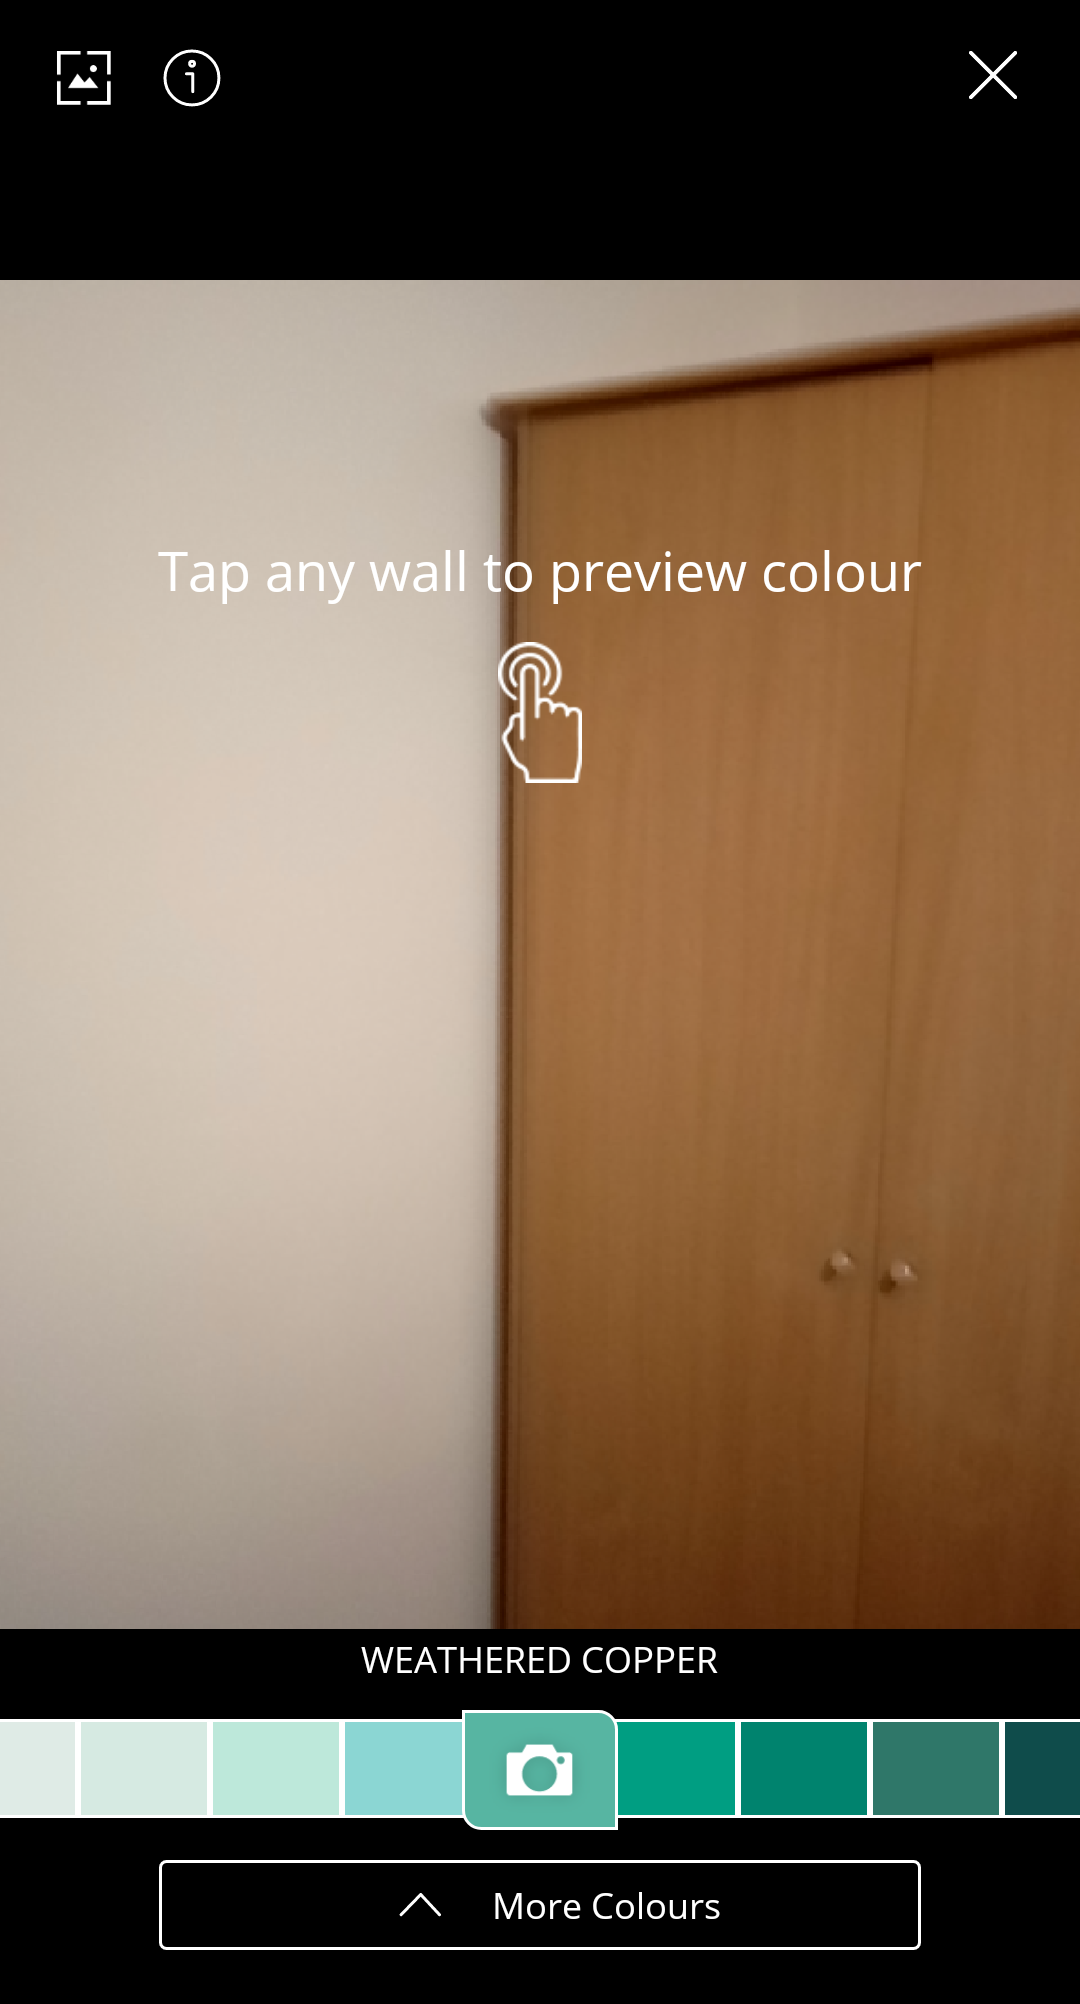 dulux app visualizer feature choosing color